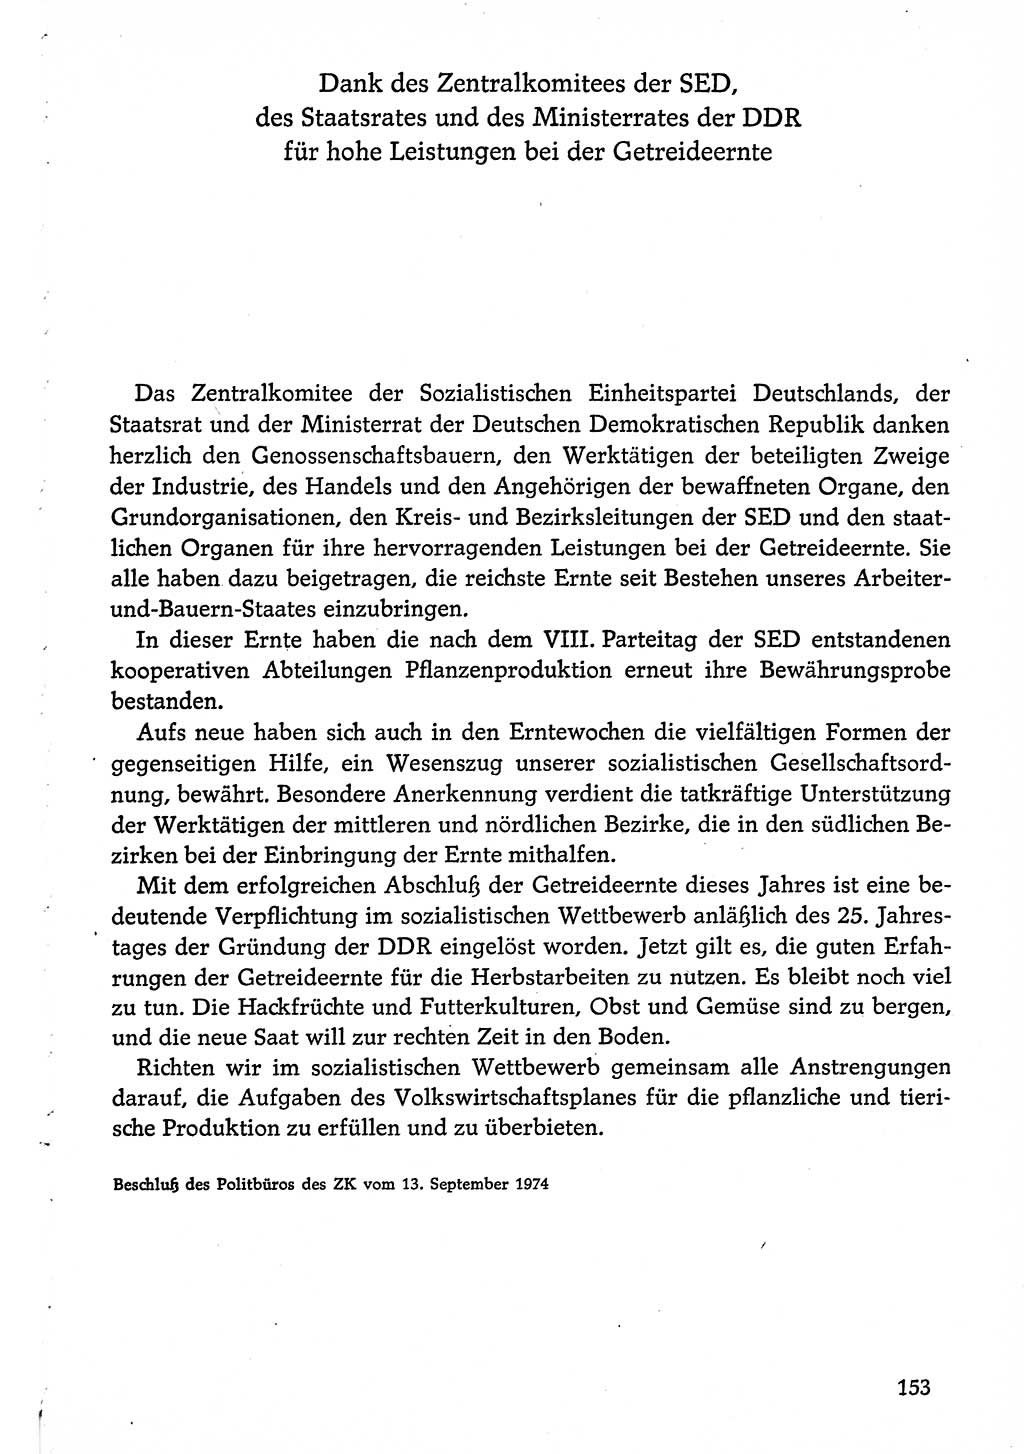 Dokumente der Sozialistischen Einheitspartei Deutschlands (SED) [Deutsche Demokratische Republik (DDR)] 1974-1975, Seite 153 (Dok. SED DDR 1978, Bd. ⅩⅤ, S. 153)